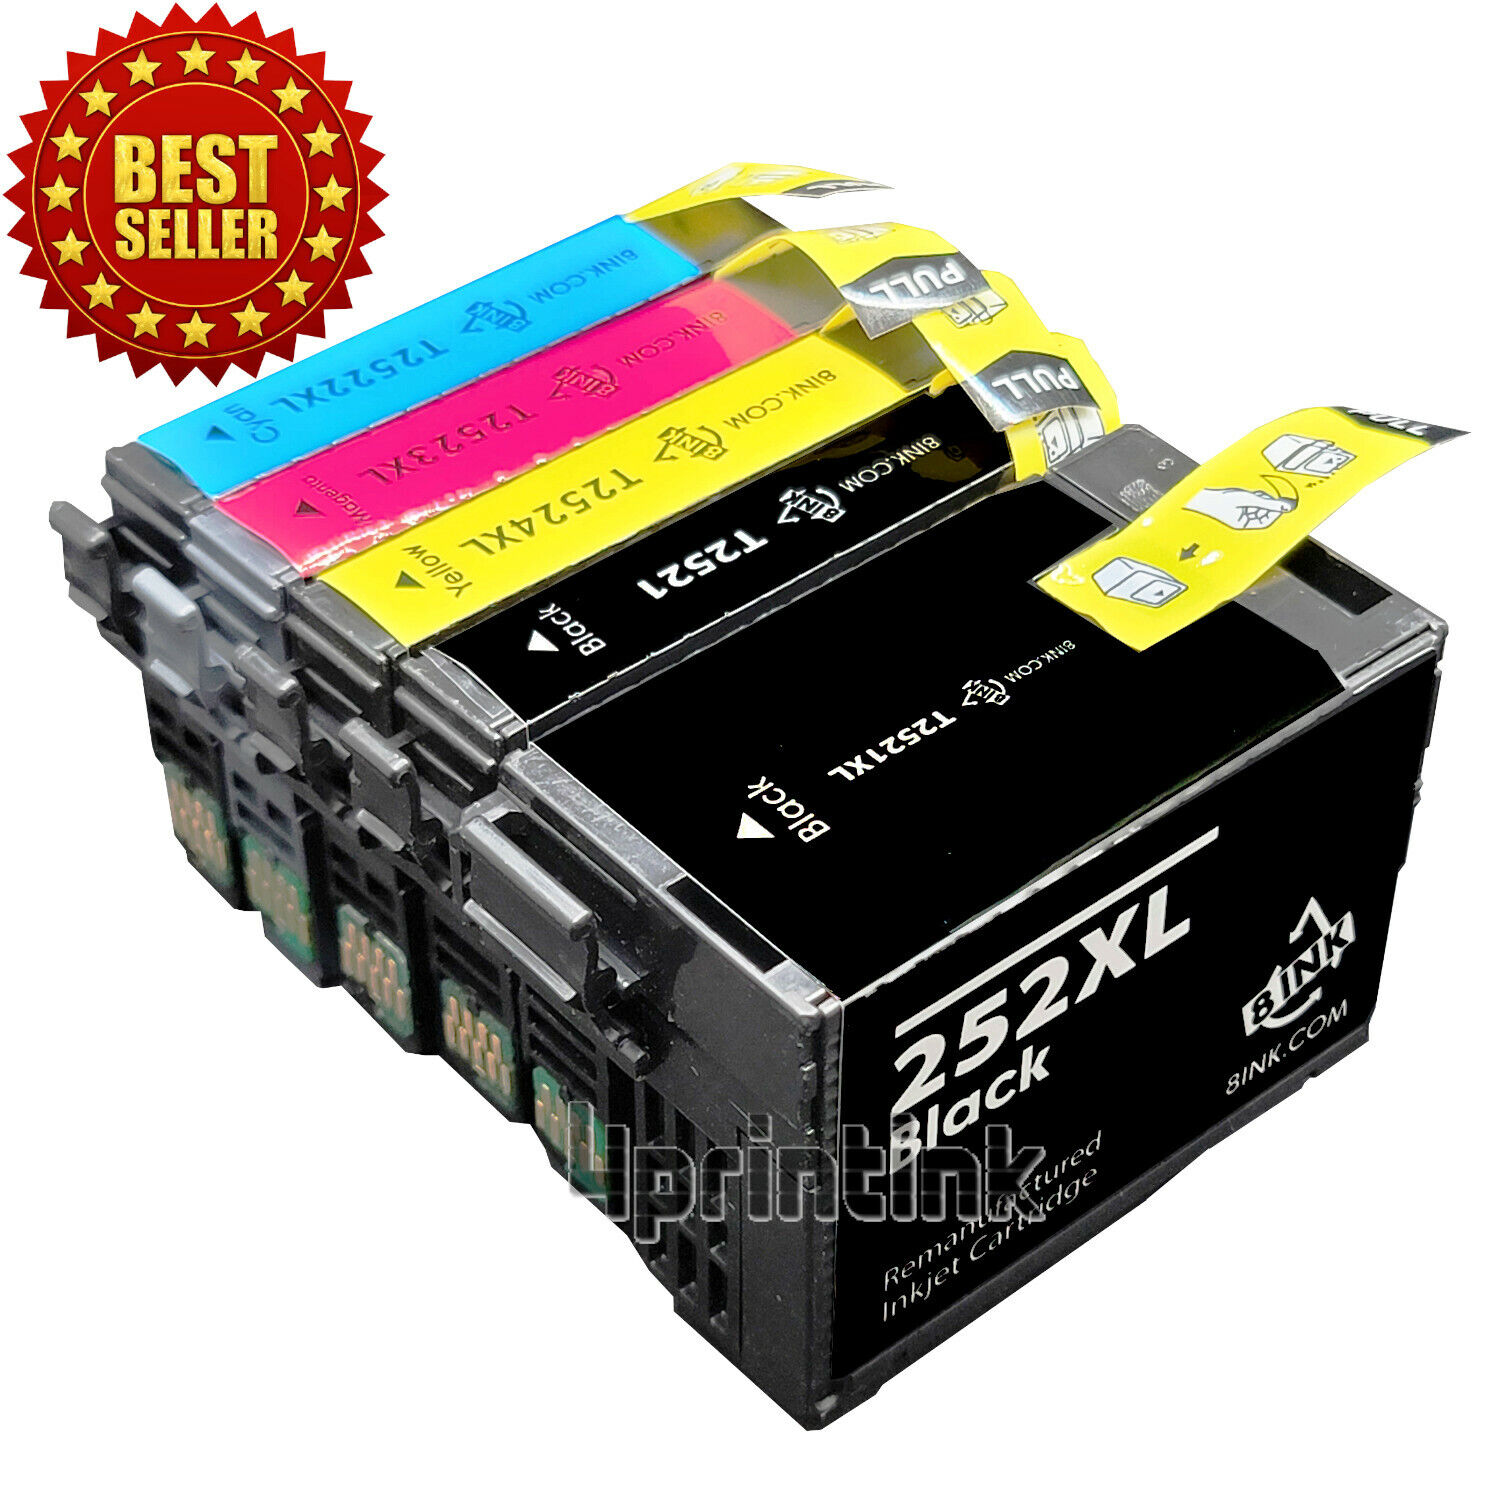 5 Pack 252XL Reman. Ink Cartridges For Epson 252 WF-7110 WF-7610 WF-7620 WF-7210